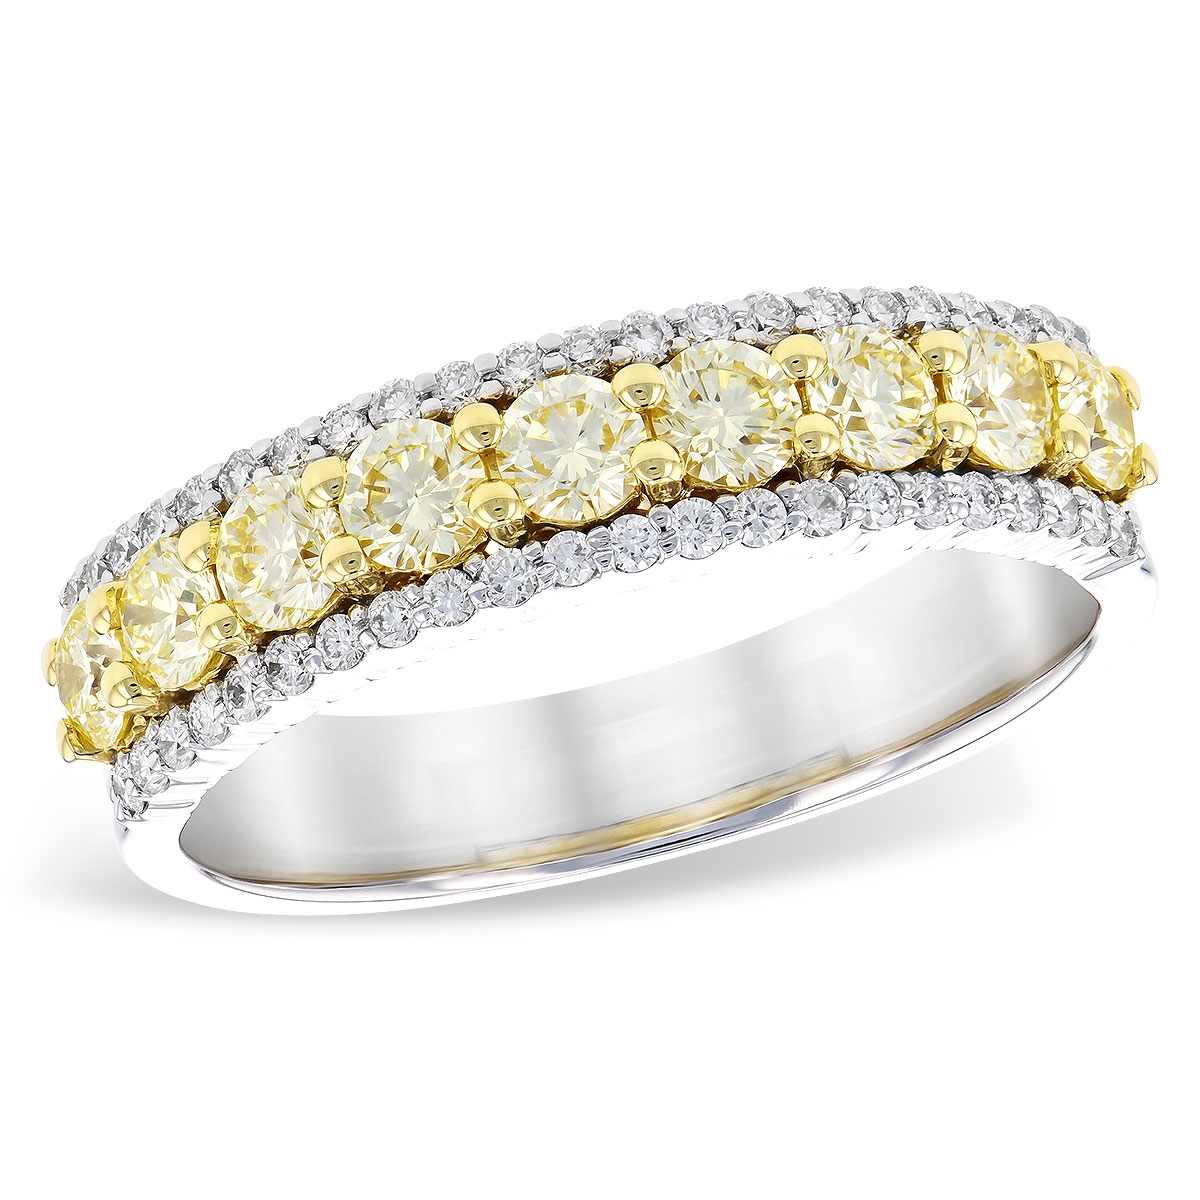 Allison Kaufman 14K White & Yellow Gold Diamond Ring